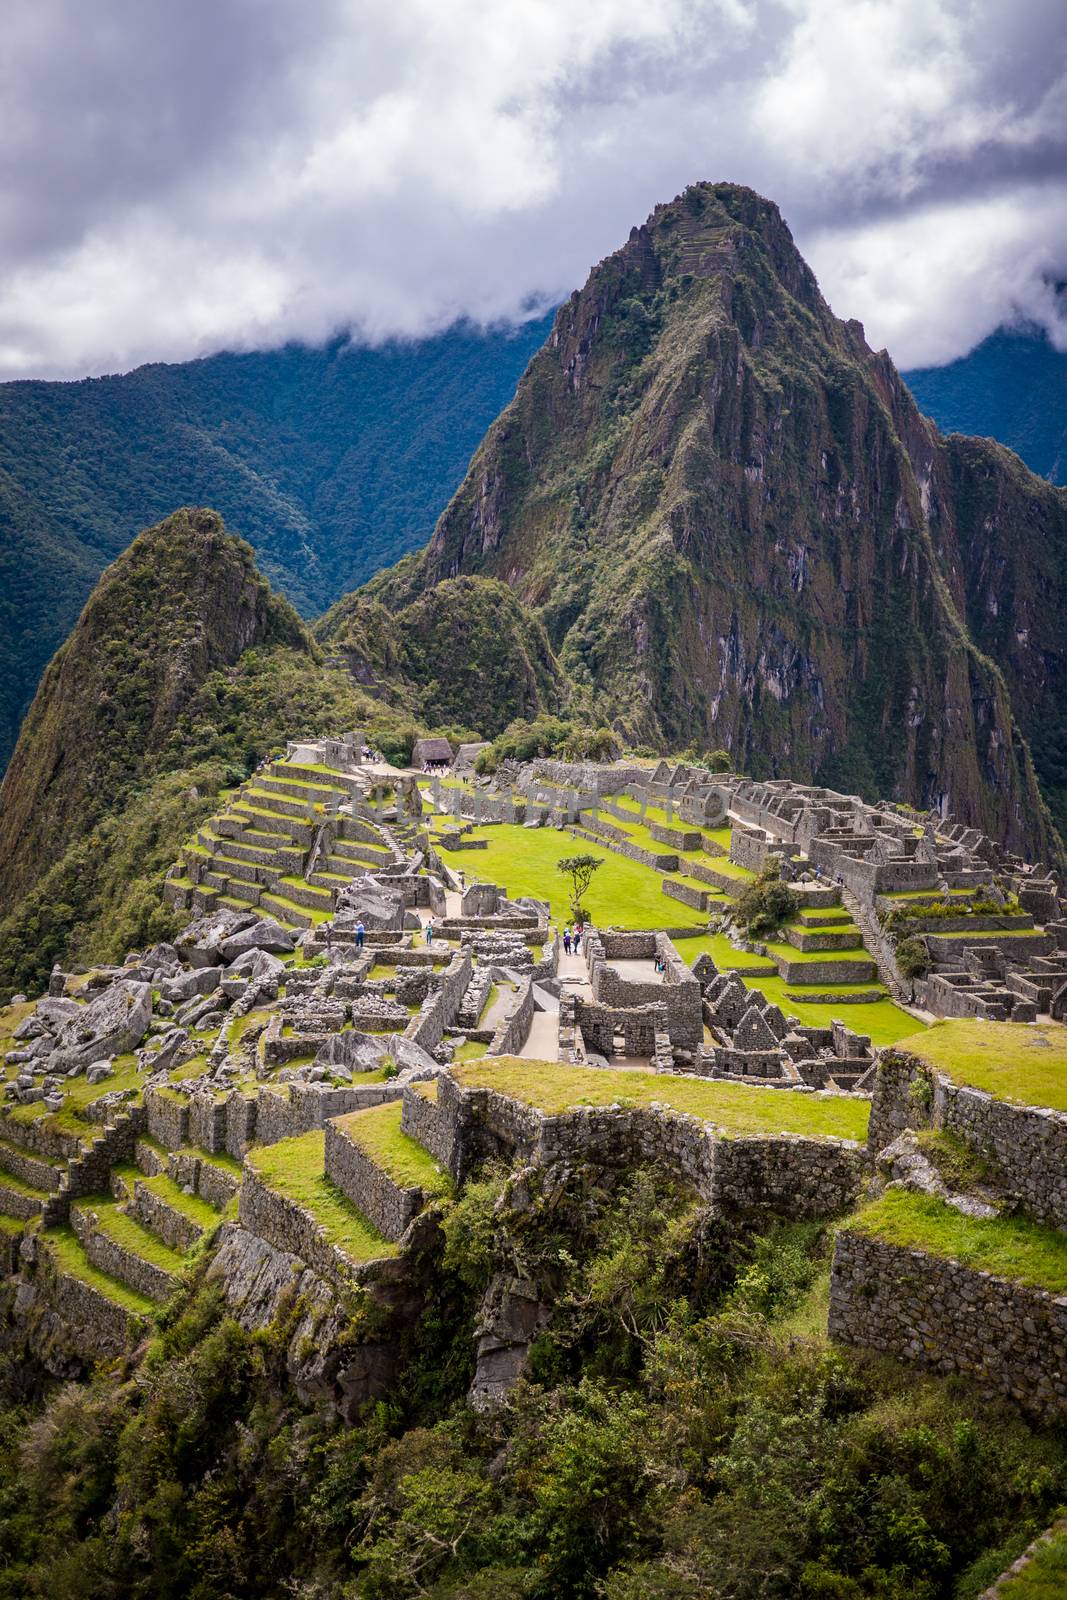 The famous ruins of Machu Picchu in Peru, South America